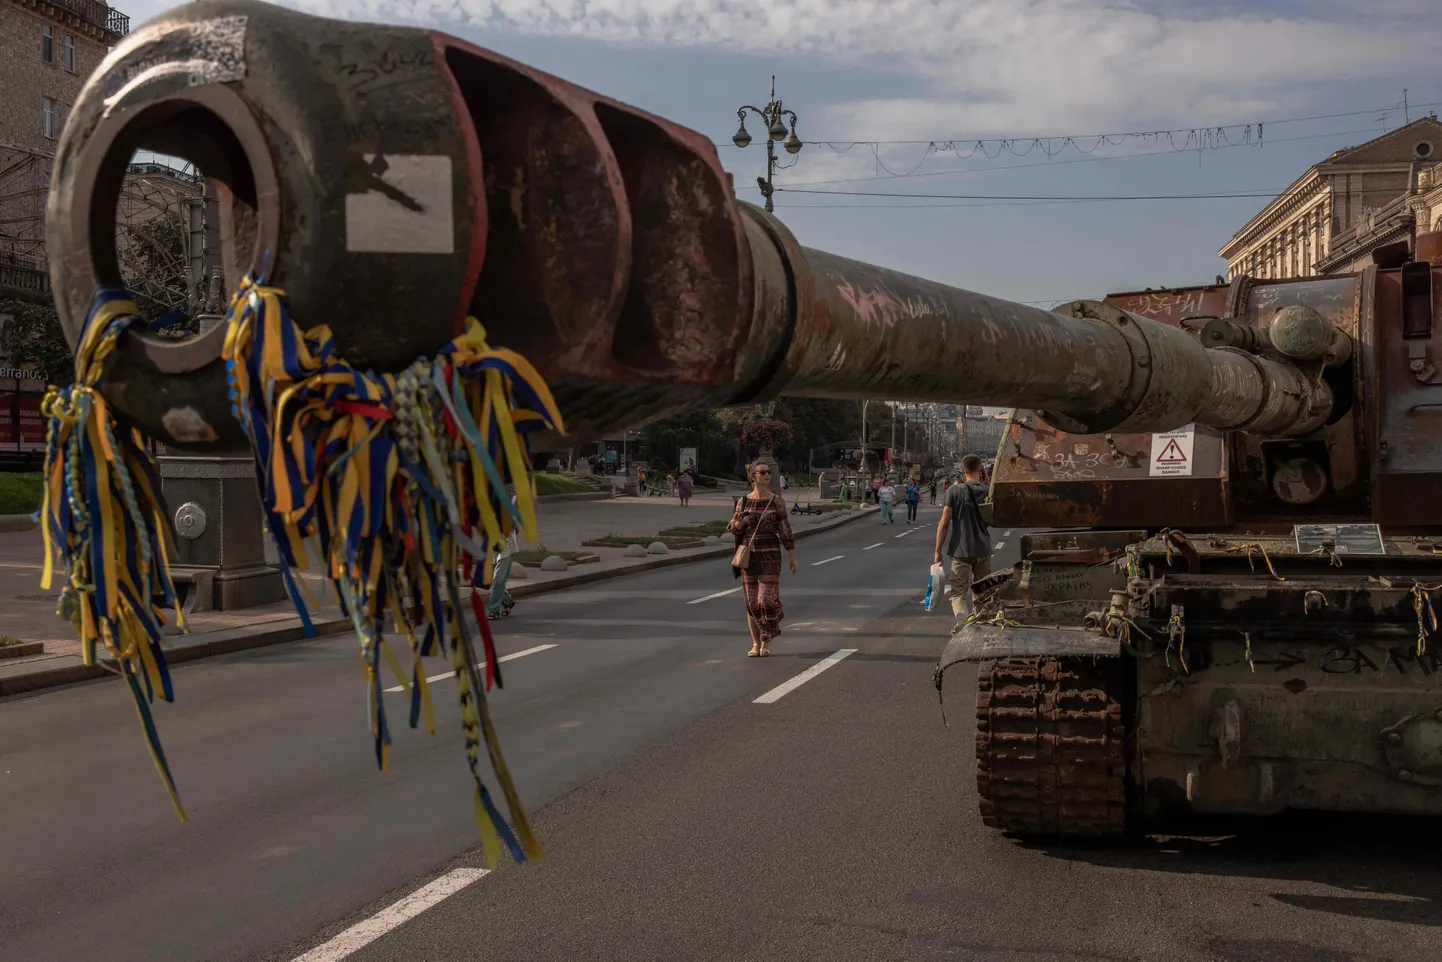 Hävitatud Vene tanke ja soomusmasinaid on näha Ukraina pealinna Kiievi kesklinnas